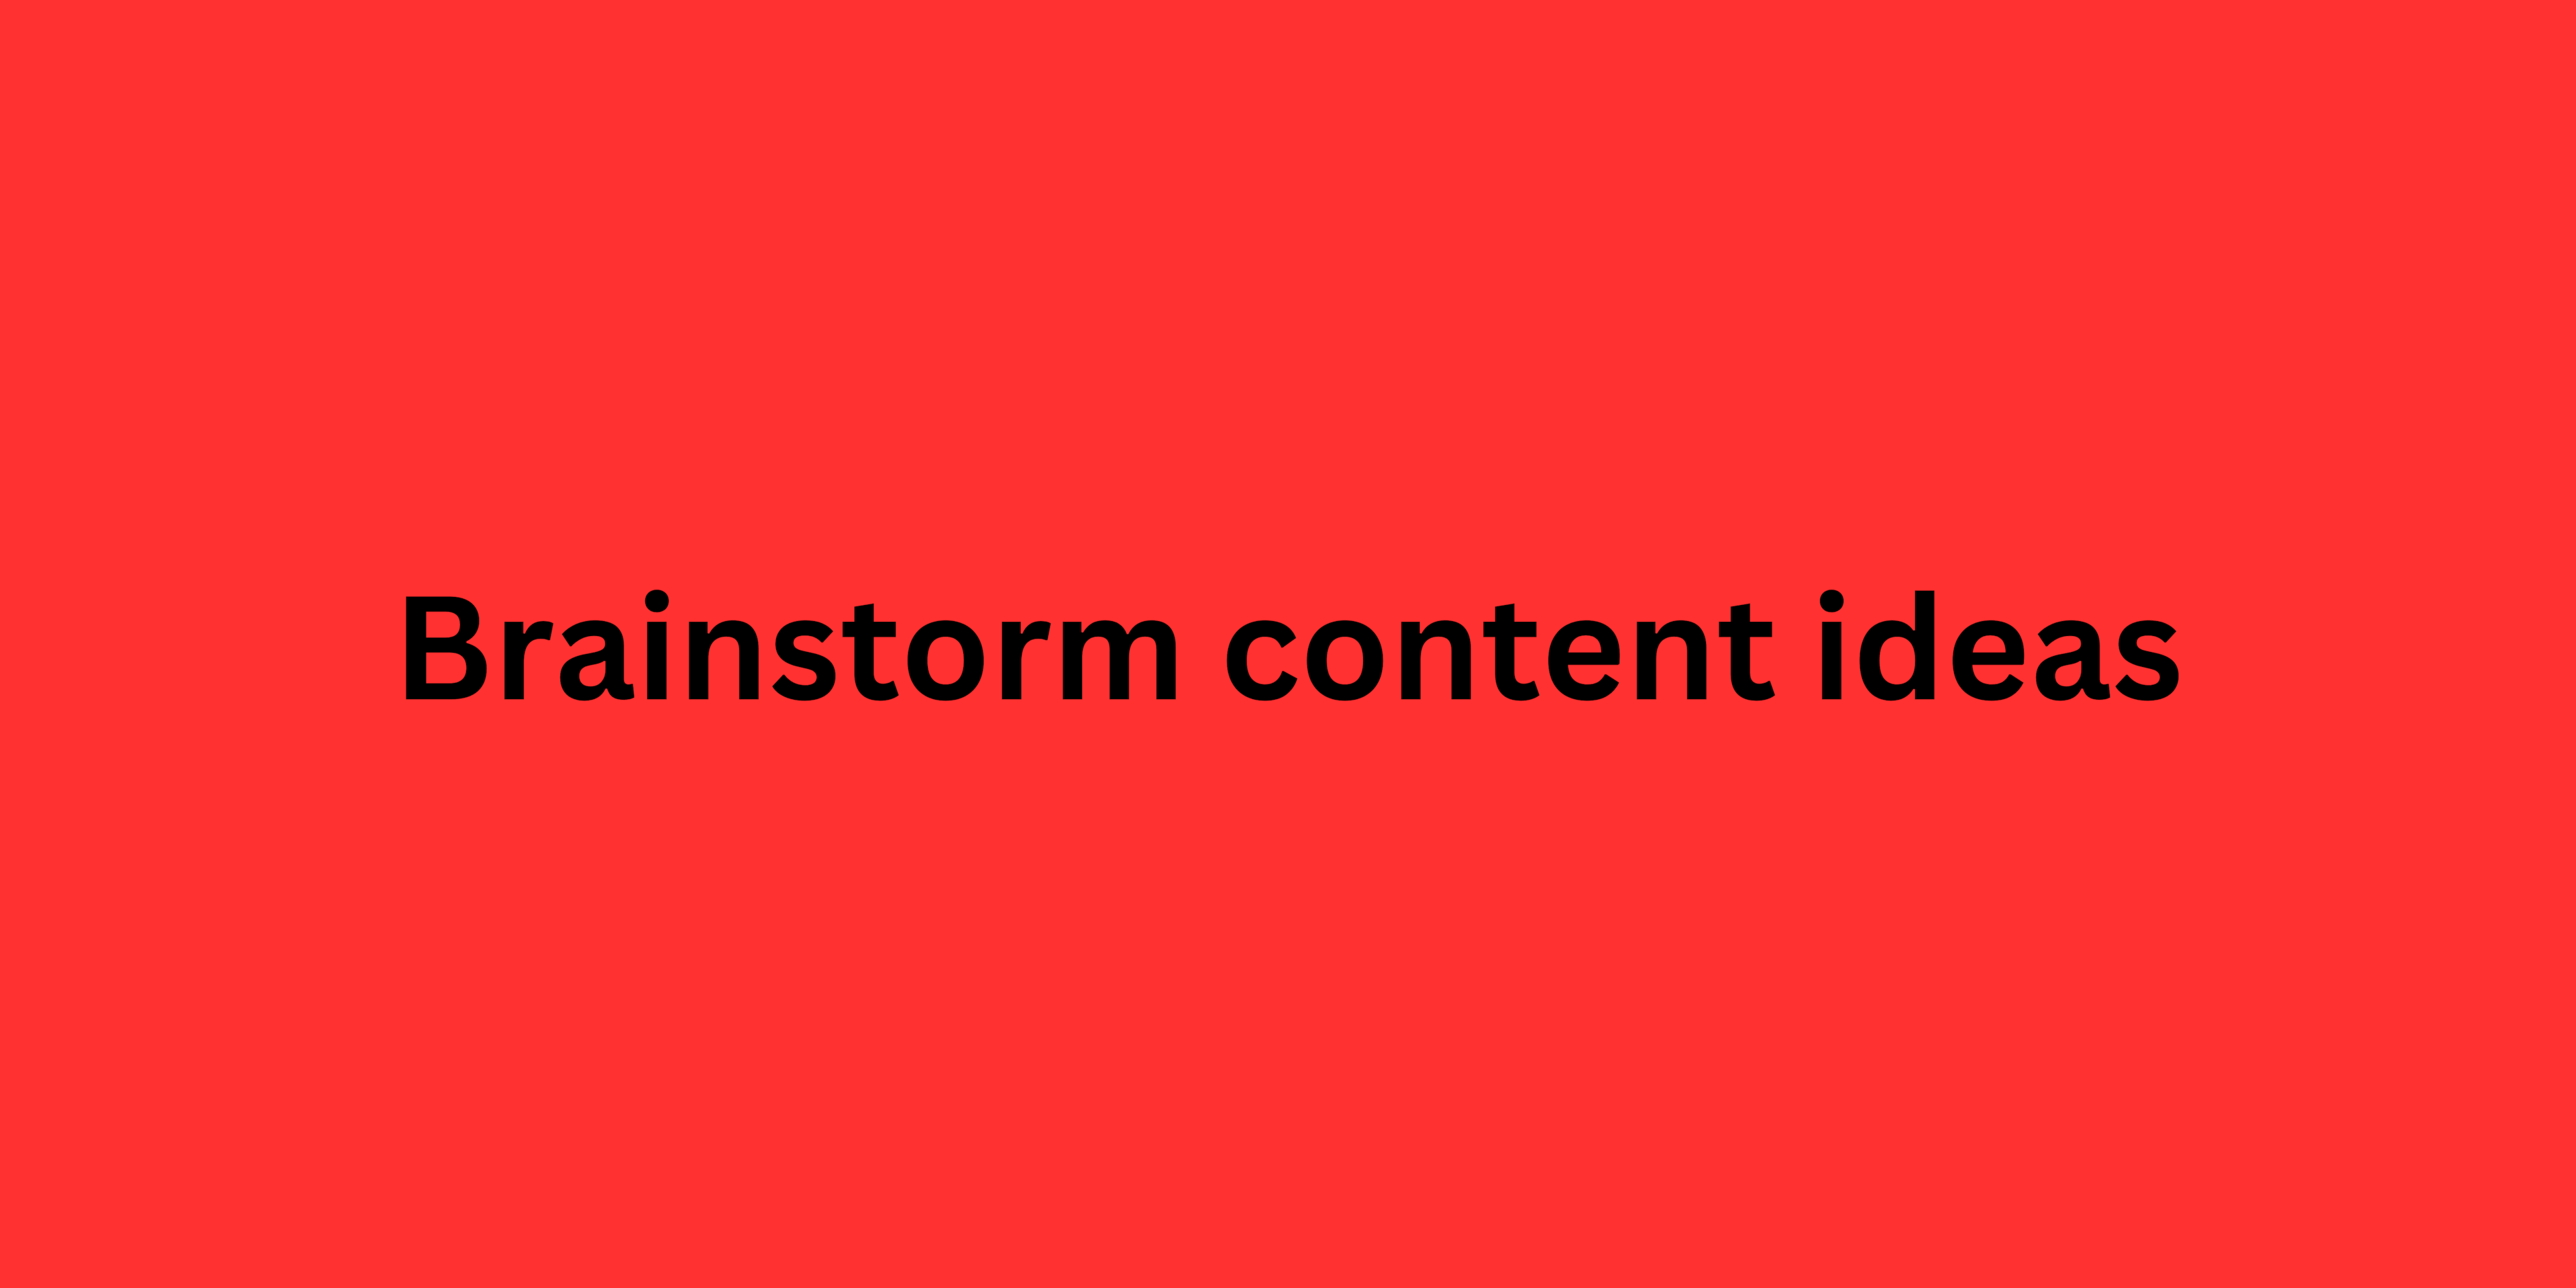 Brainstorm content ideas